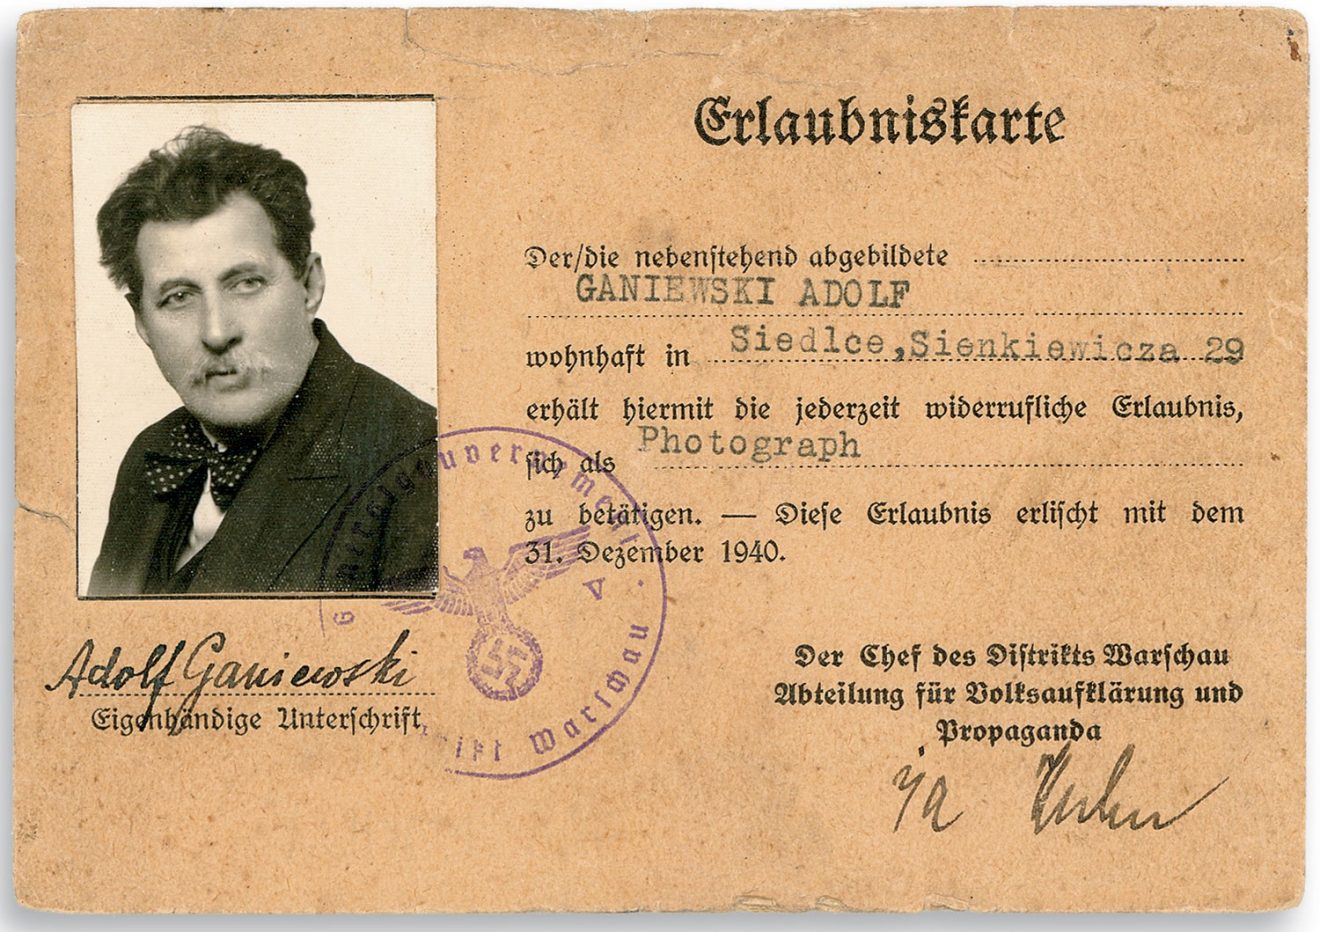 Dokument (karta pracy) z zdjęciem mężczyzny po lewej stronie oraz napisy i pieczęcie urzędowe w języku niemieckim